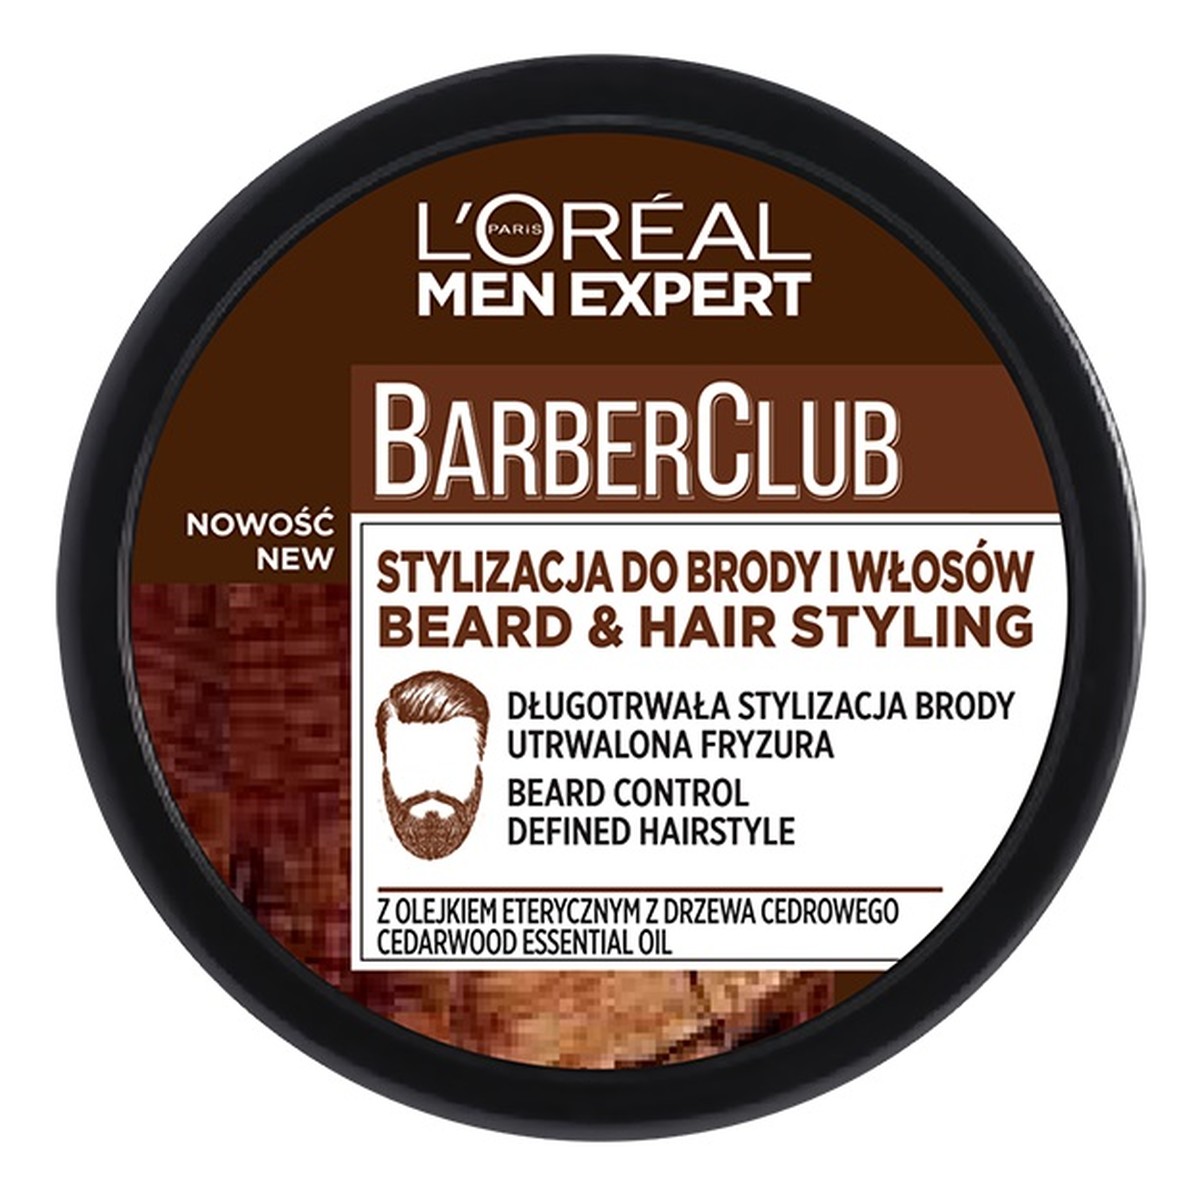 Barber Club krem do stylizacji brody i włosów